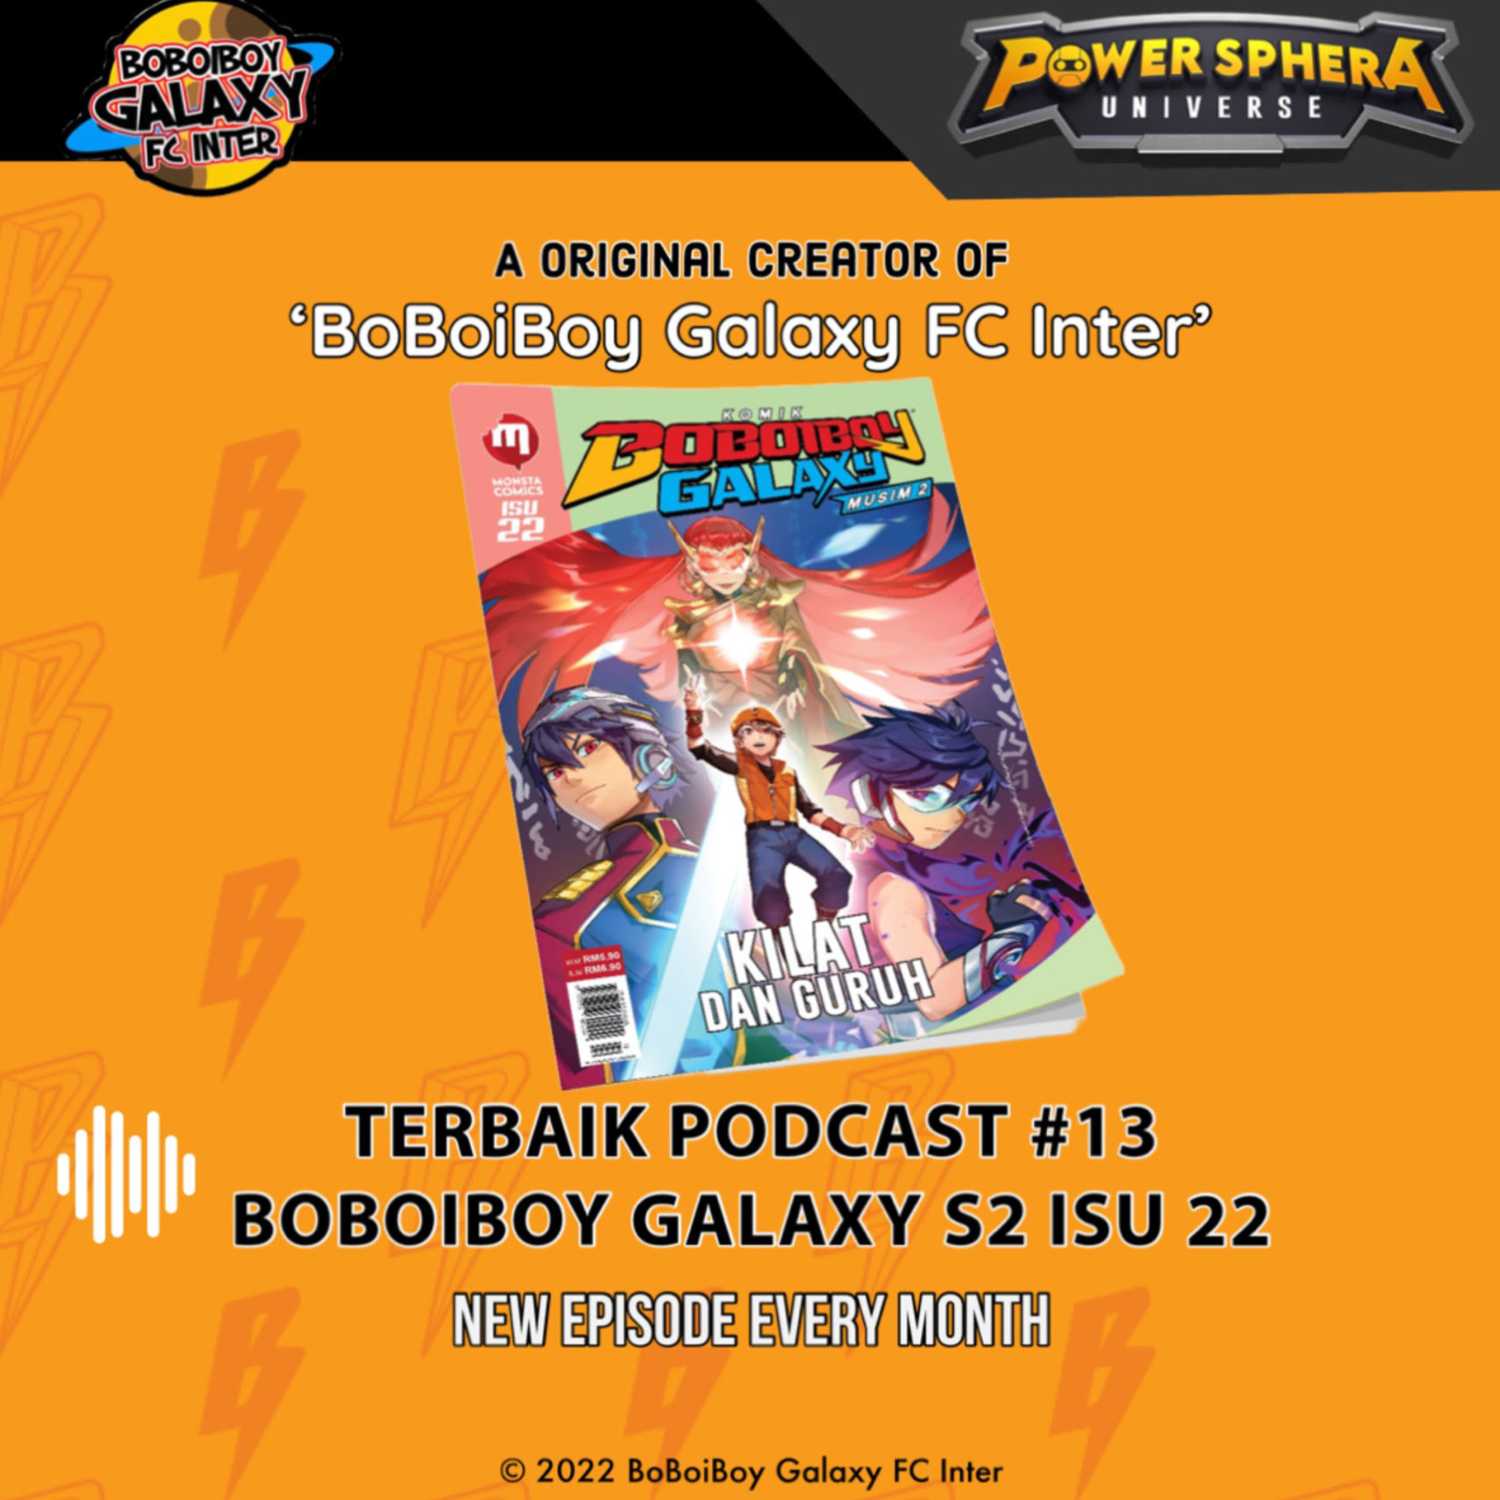 Terbaik Podcast #13 - BoBoiBoy Galaxy Season 2 Isu 22 Spoiler